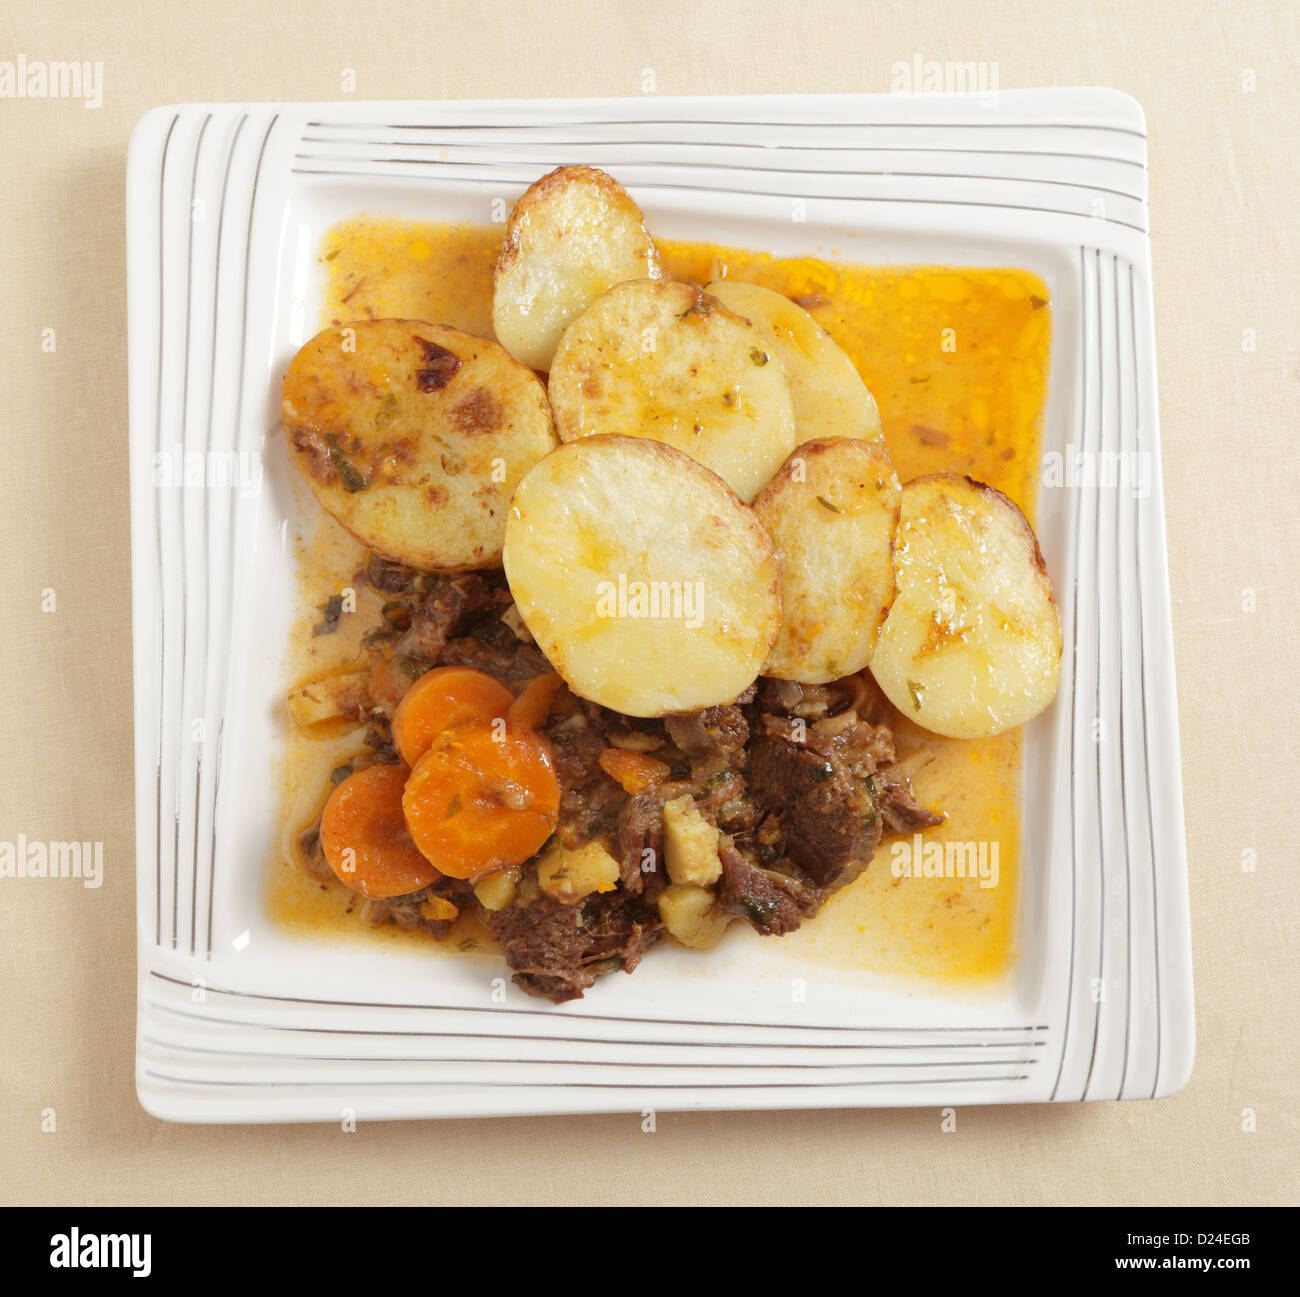 Ein hausgemachter Eintopf aus Rindfleisch, Zwiebeln, Karotten und  Pastinaken, machte in einem Dampfkochtopf, serviert mit Sautierte Kartoffeln  in Scheiben Stockfotografie - Alamy